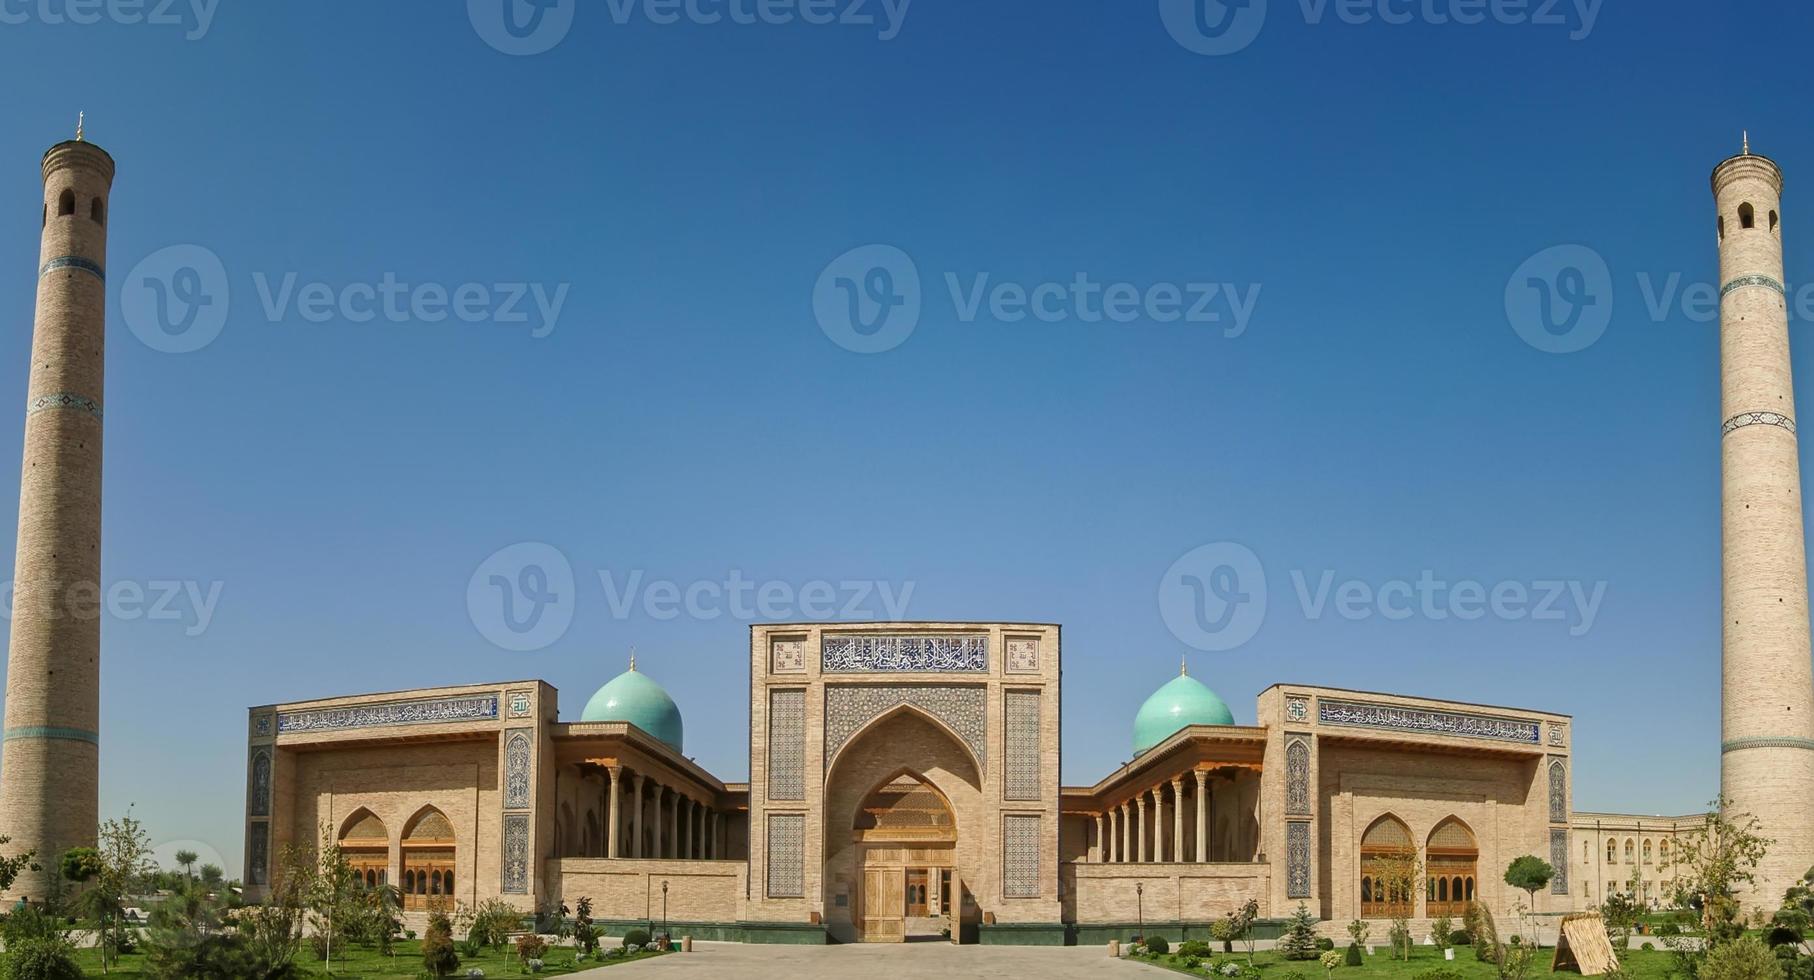 le design extérieur de l'architecture de l'asie centrale. république d'ouzbékistan, tachkent photo